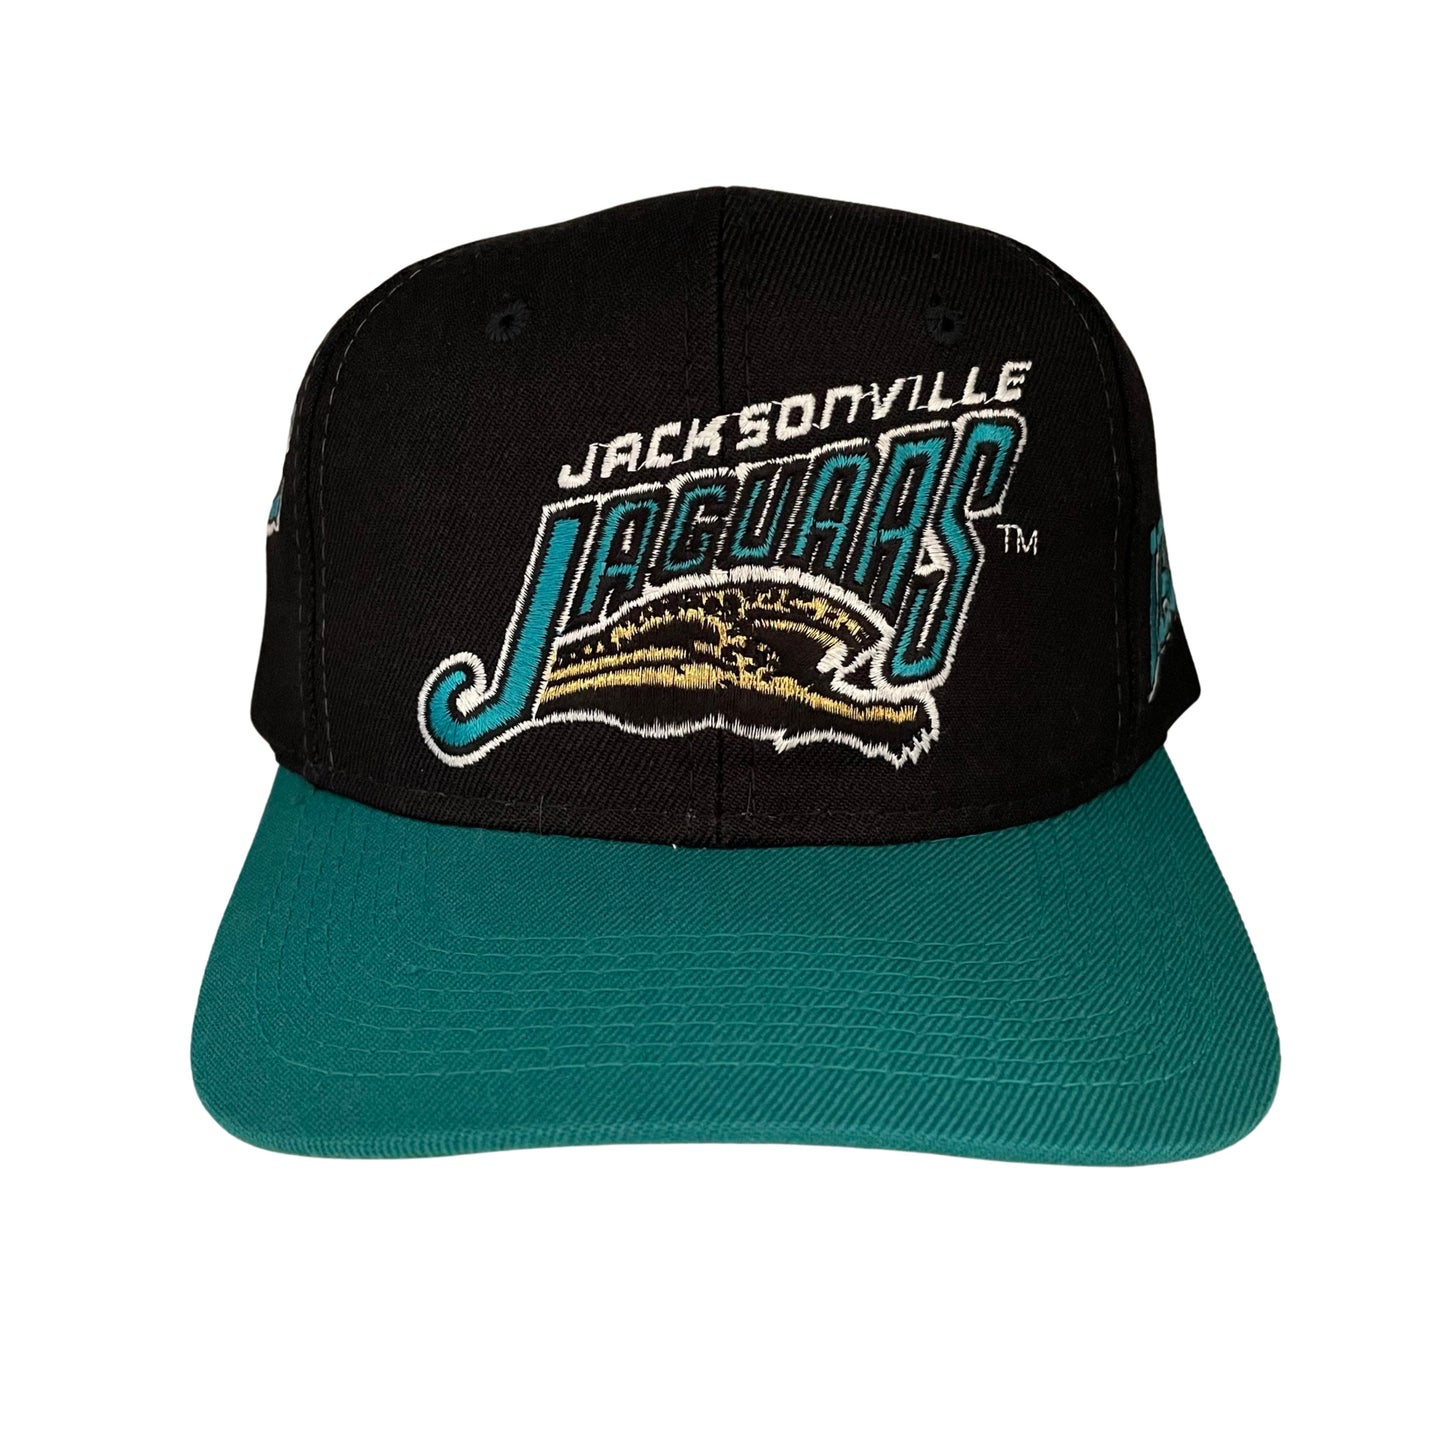 Vintage Jacksonville Jaguars banned logo SPORTS SPECIALTIES "Side Wave" hat